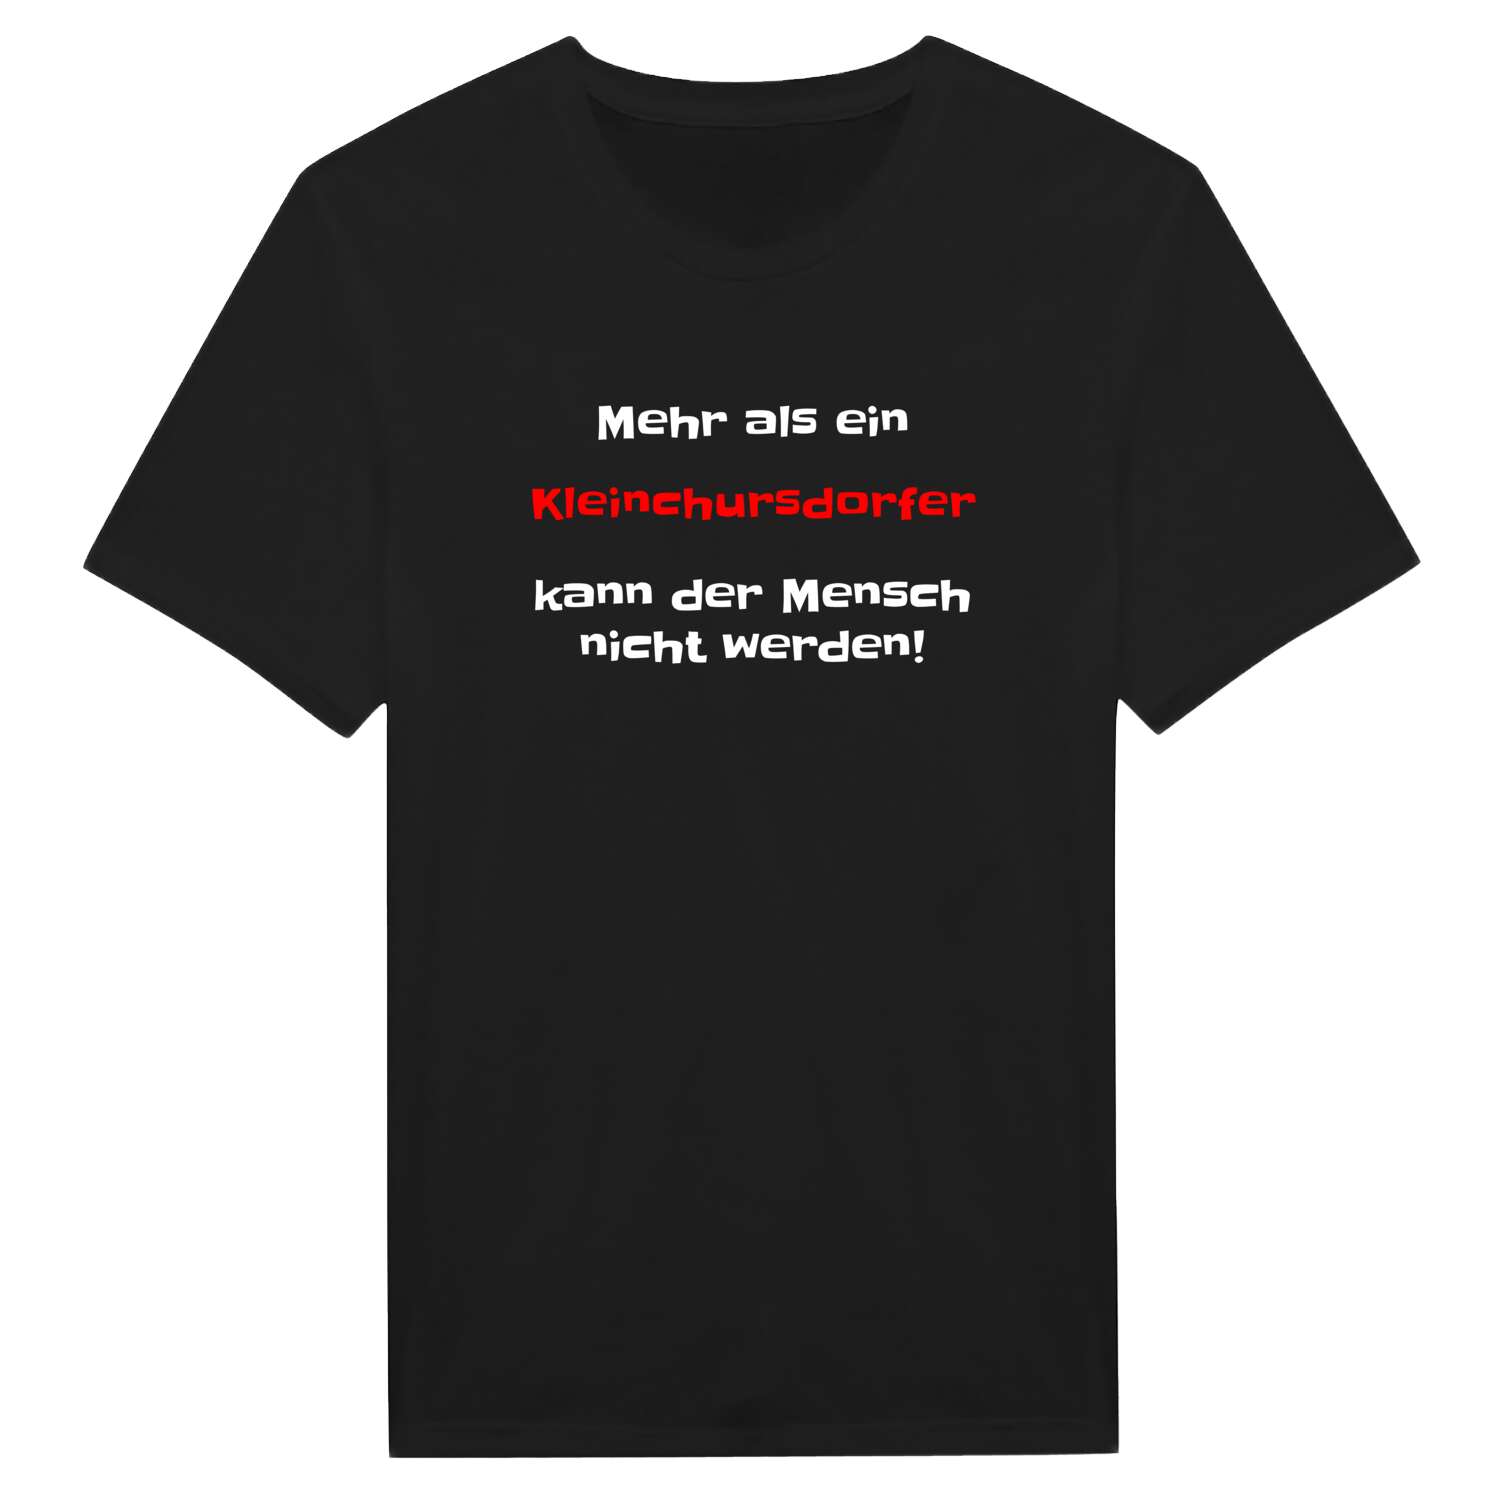 Kleinchursdorf T-Shirt »Mehr als ein«